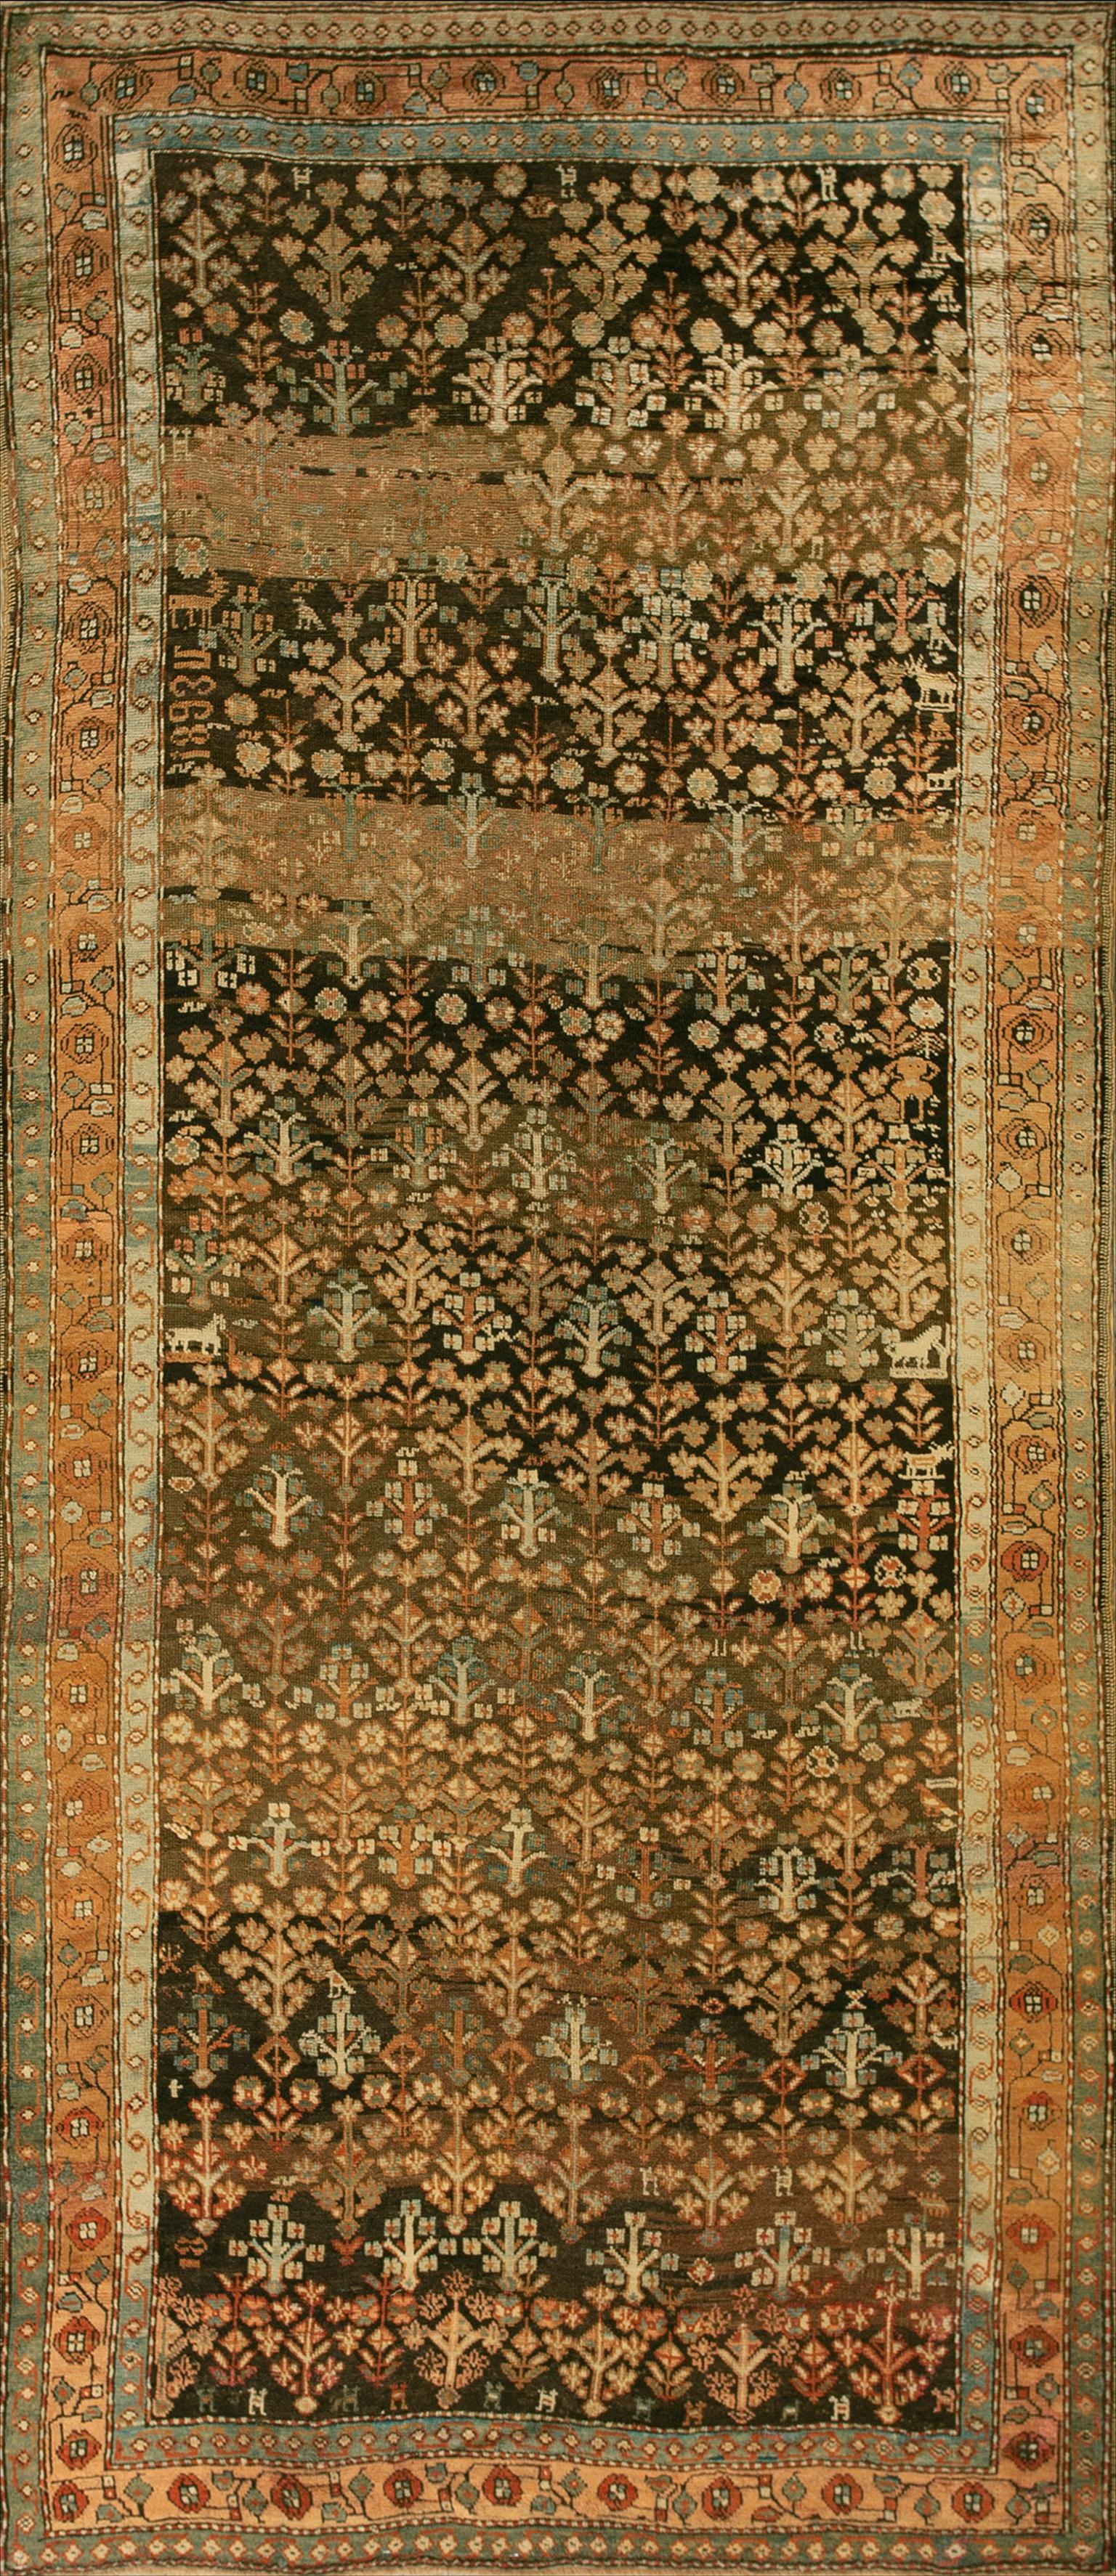 Tapis d'arbustes du 19ème siècle du Karabagh ( 4'6" x 10"9" - 137 x 328 )